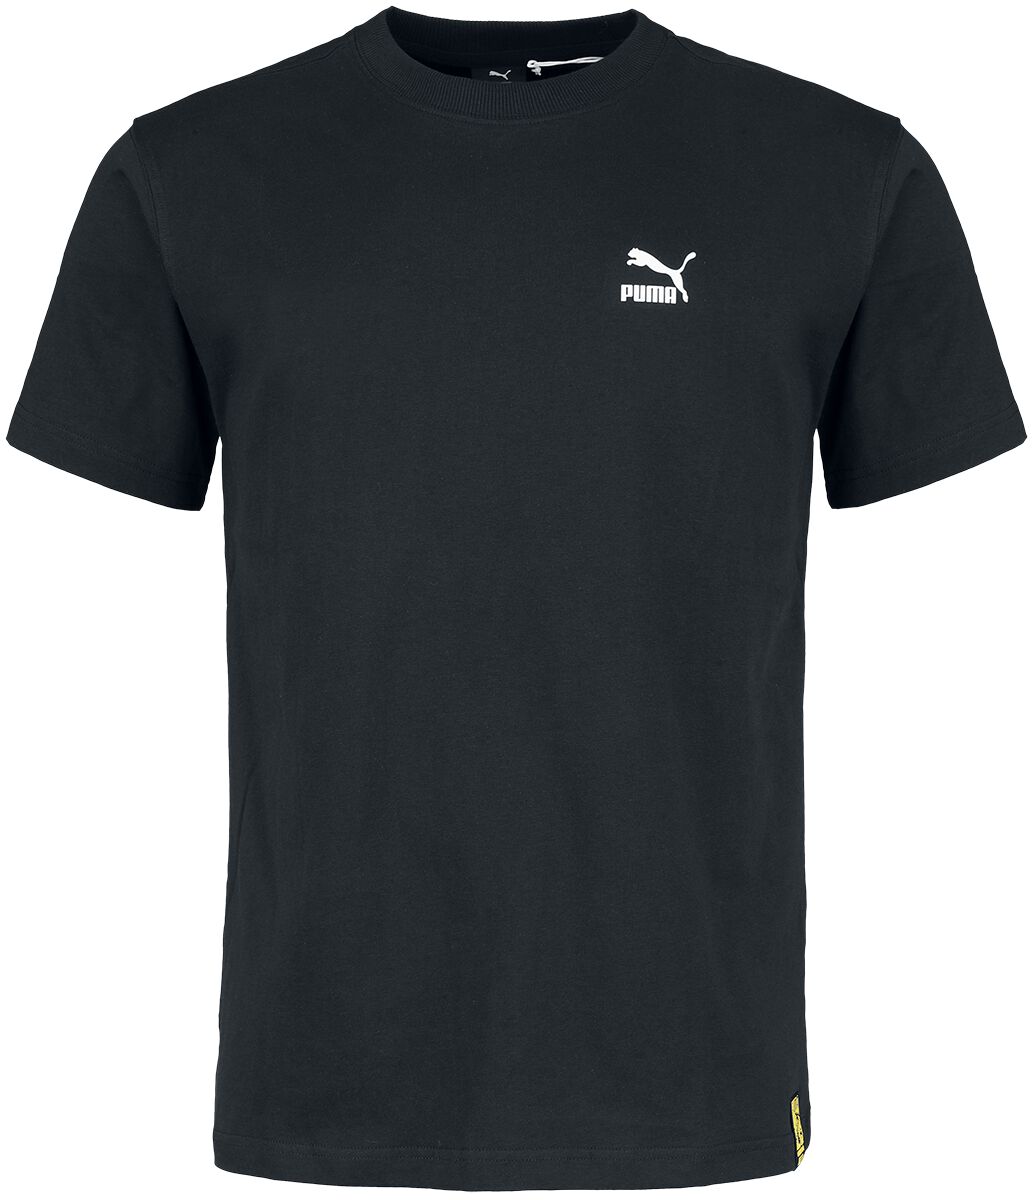 Puma PUMA X STAPLE Tee T-Shirt schwarz in L